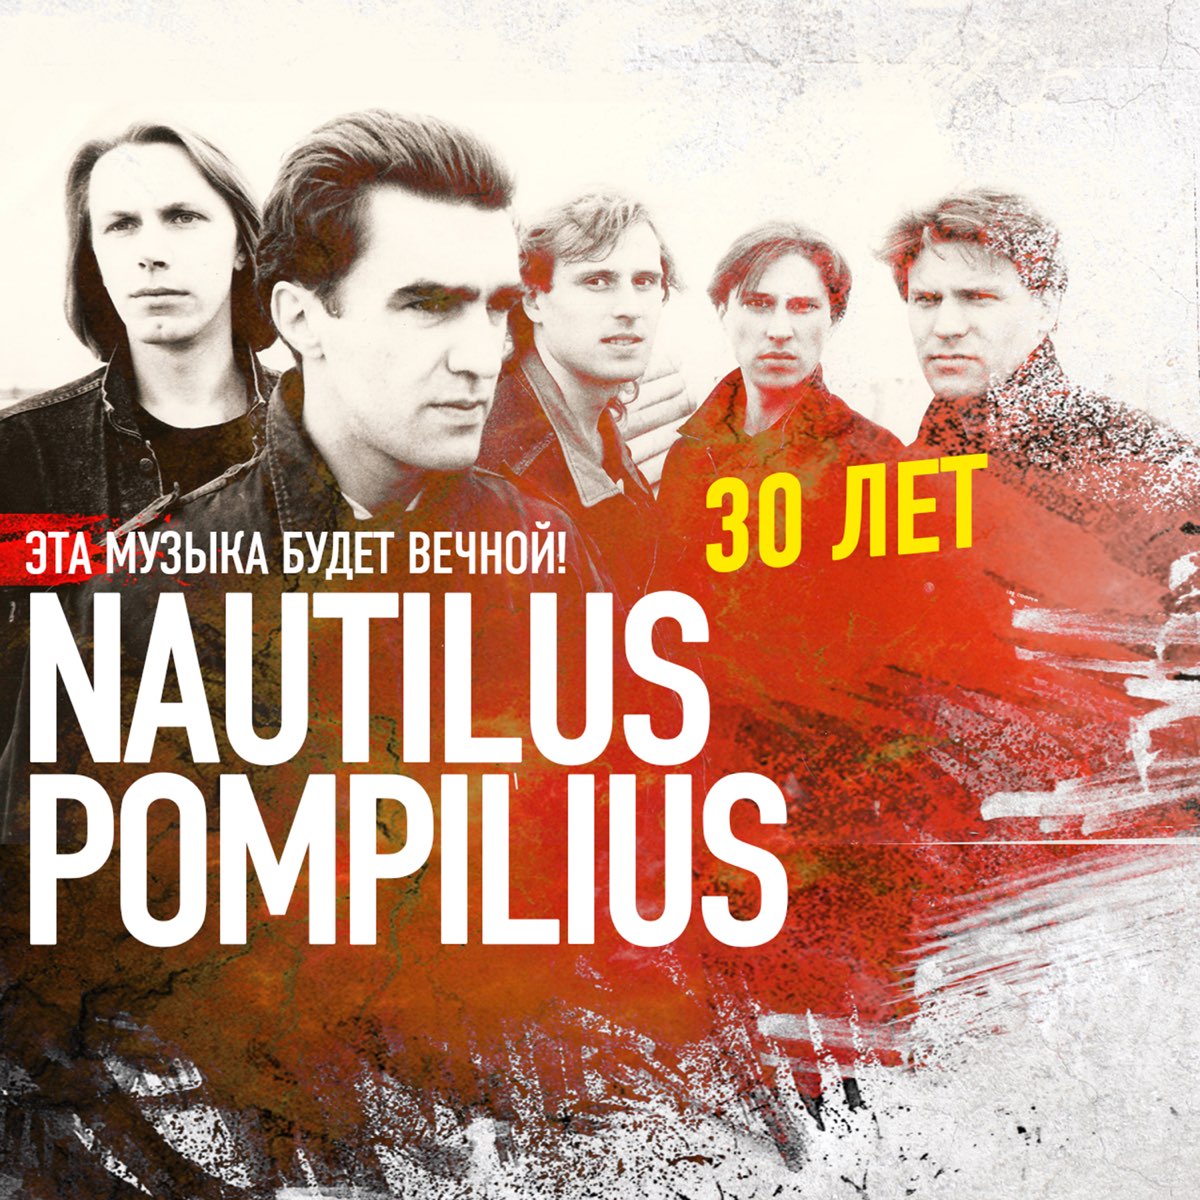 Слушать музыку бывшие всегда. Наутилус Помпилиус. Наутилус группа. Наутилус 1992. Группа Nautilus Pompilius плакат.